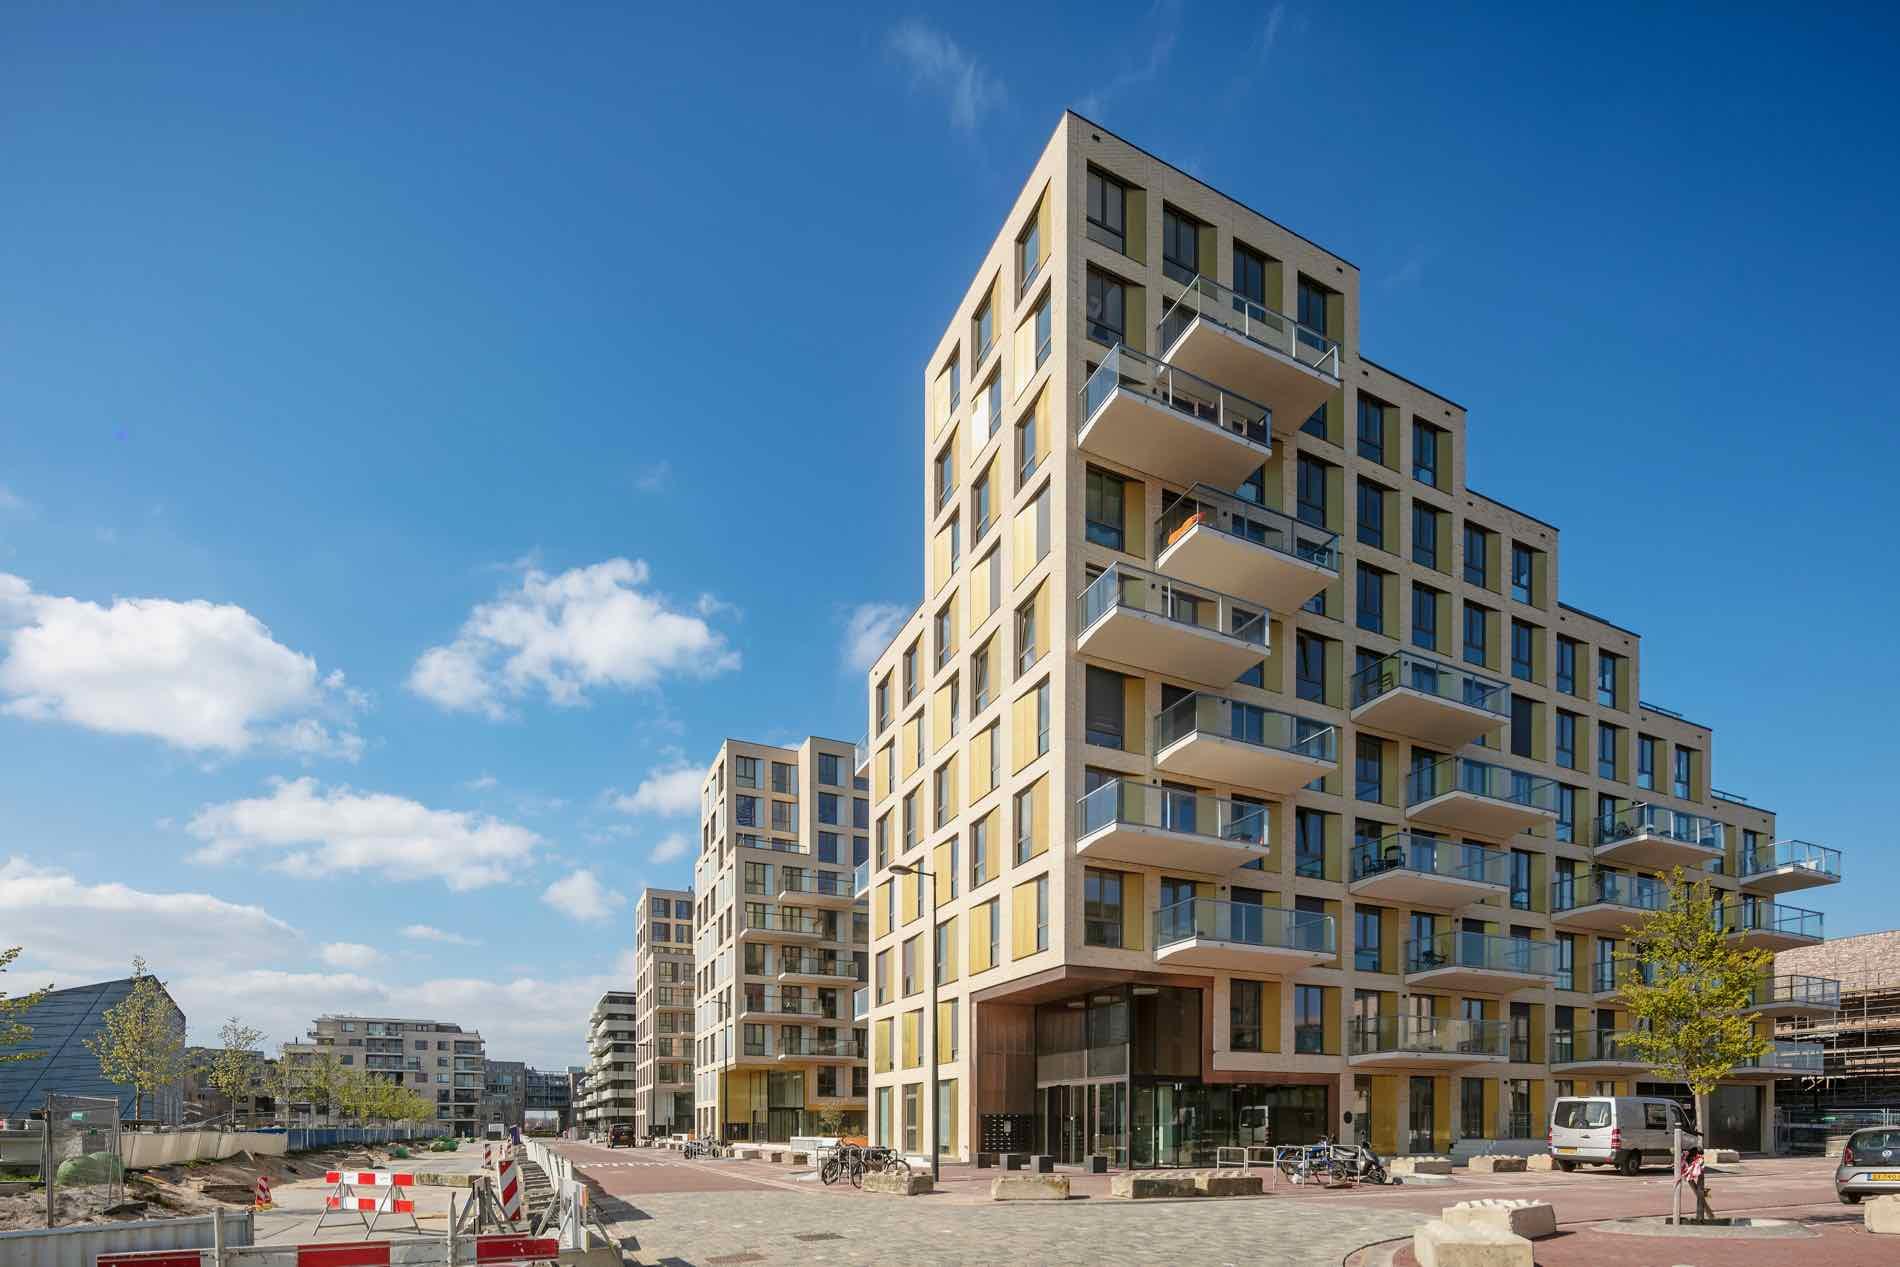 Appartementen Heroes 1 Amsterdam - Arons & Gelauff Architecten